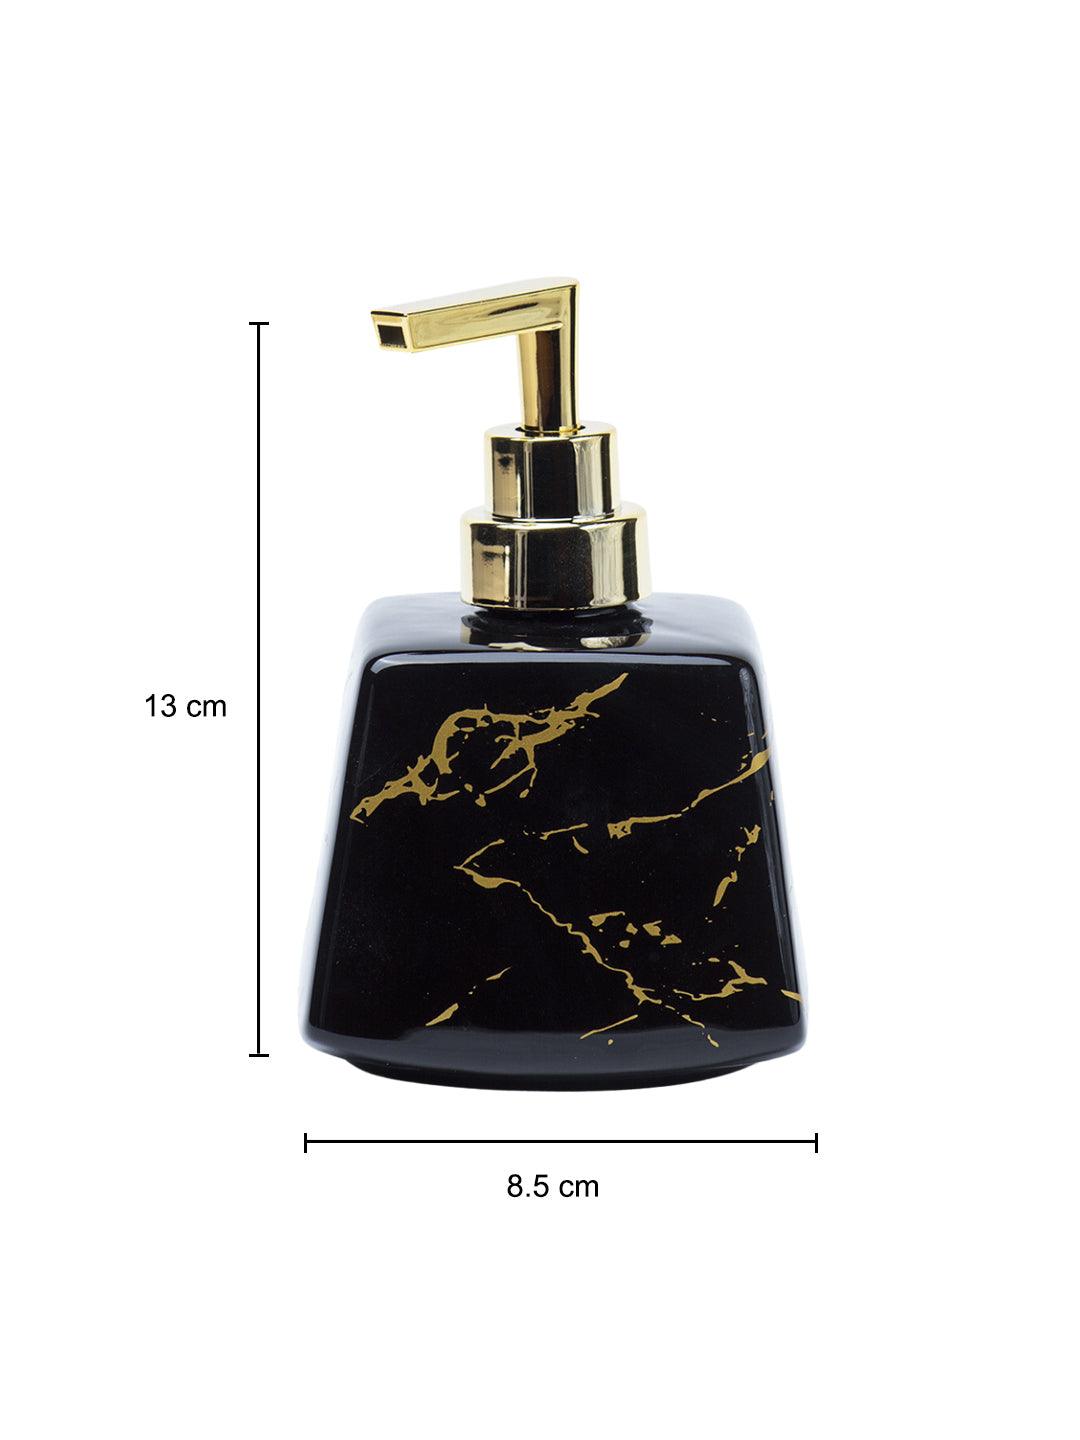 Black Ceramic Soap Dispenser - Stone Finish, Bath Accessories - 5